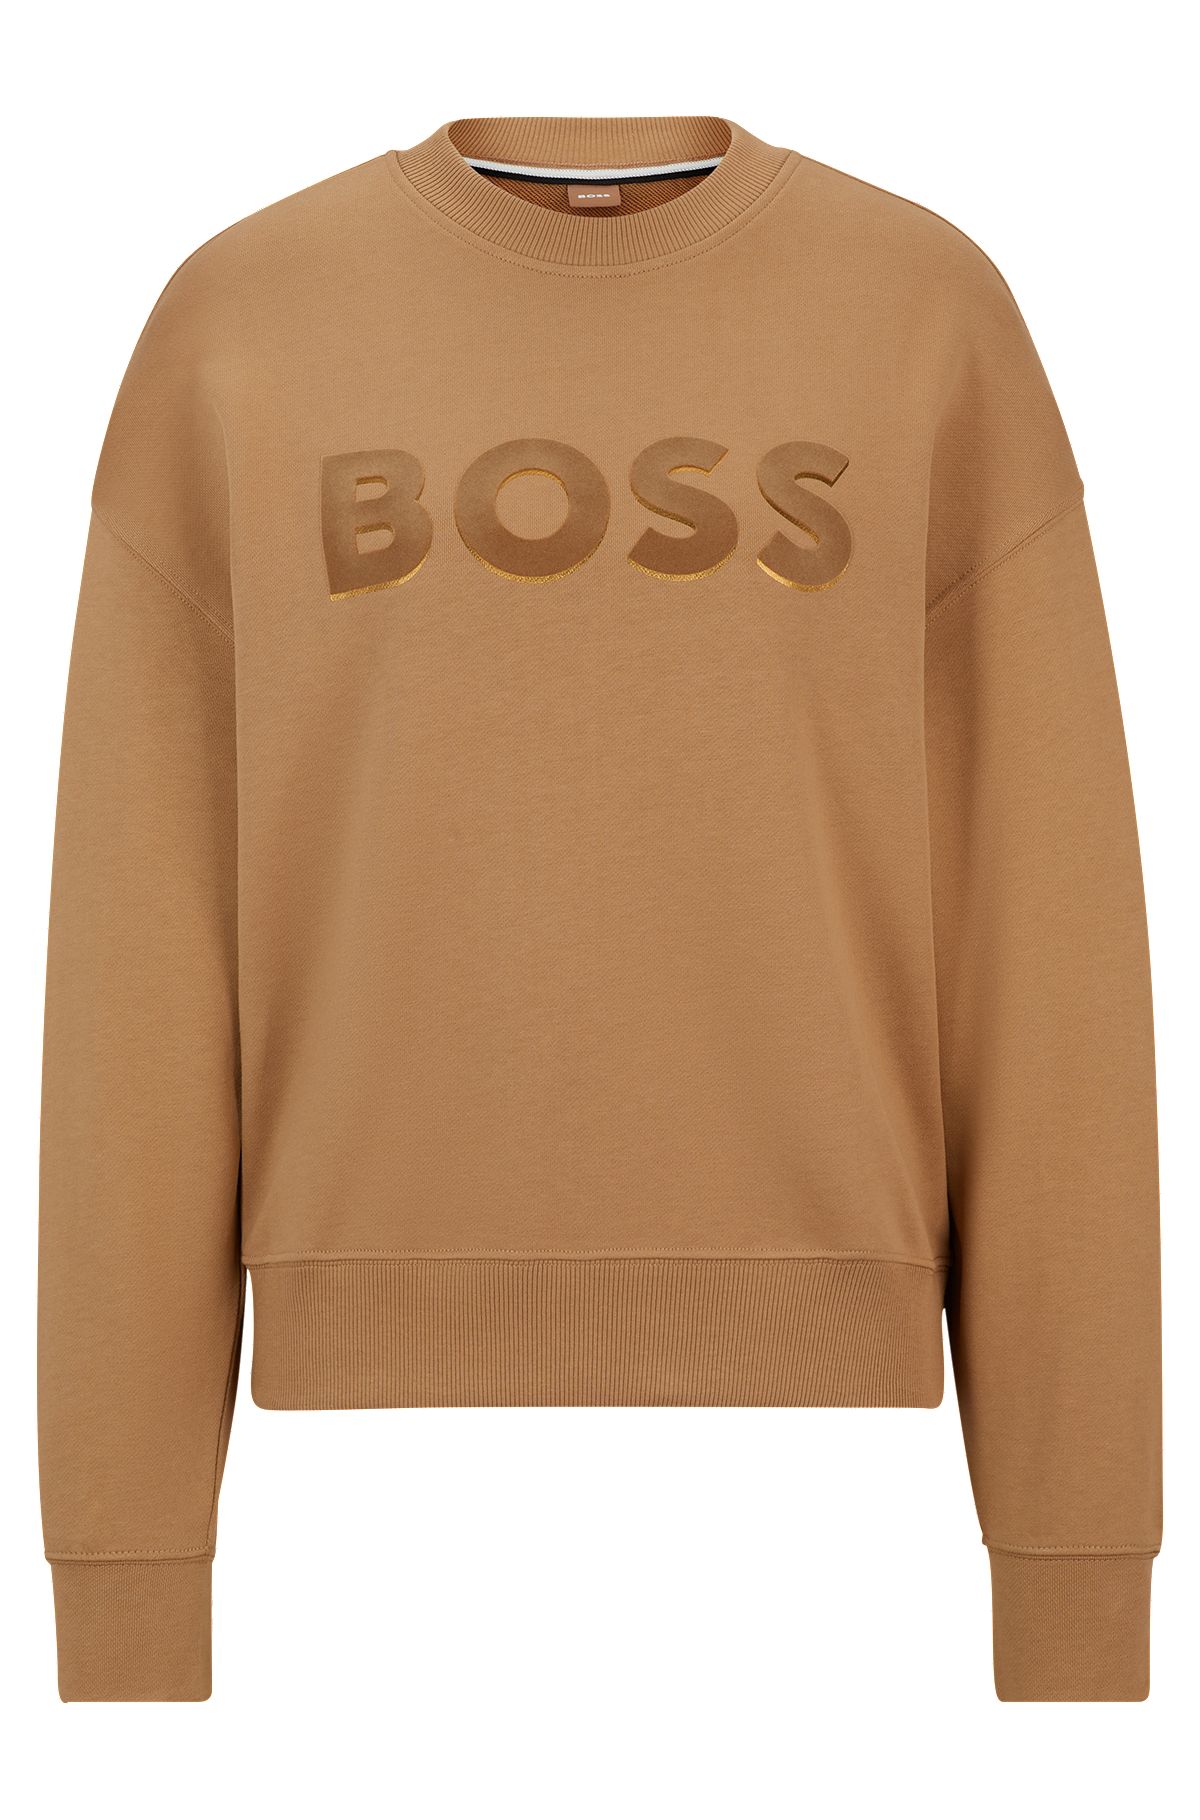 Cotton-terry sweatshirt with logo detail, Beige